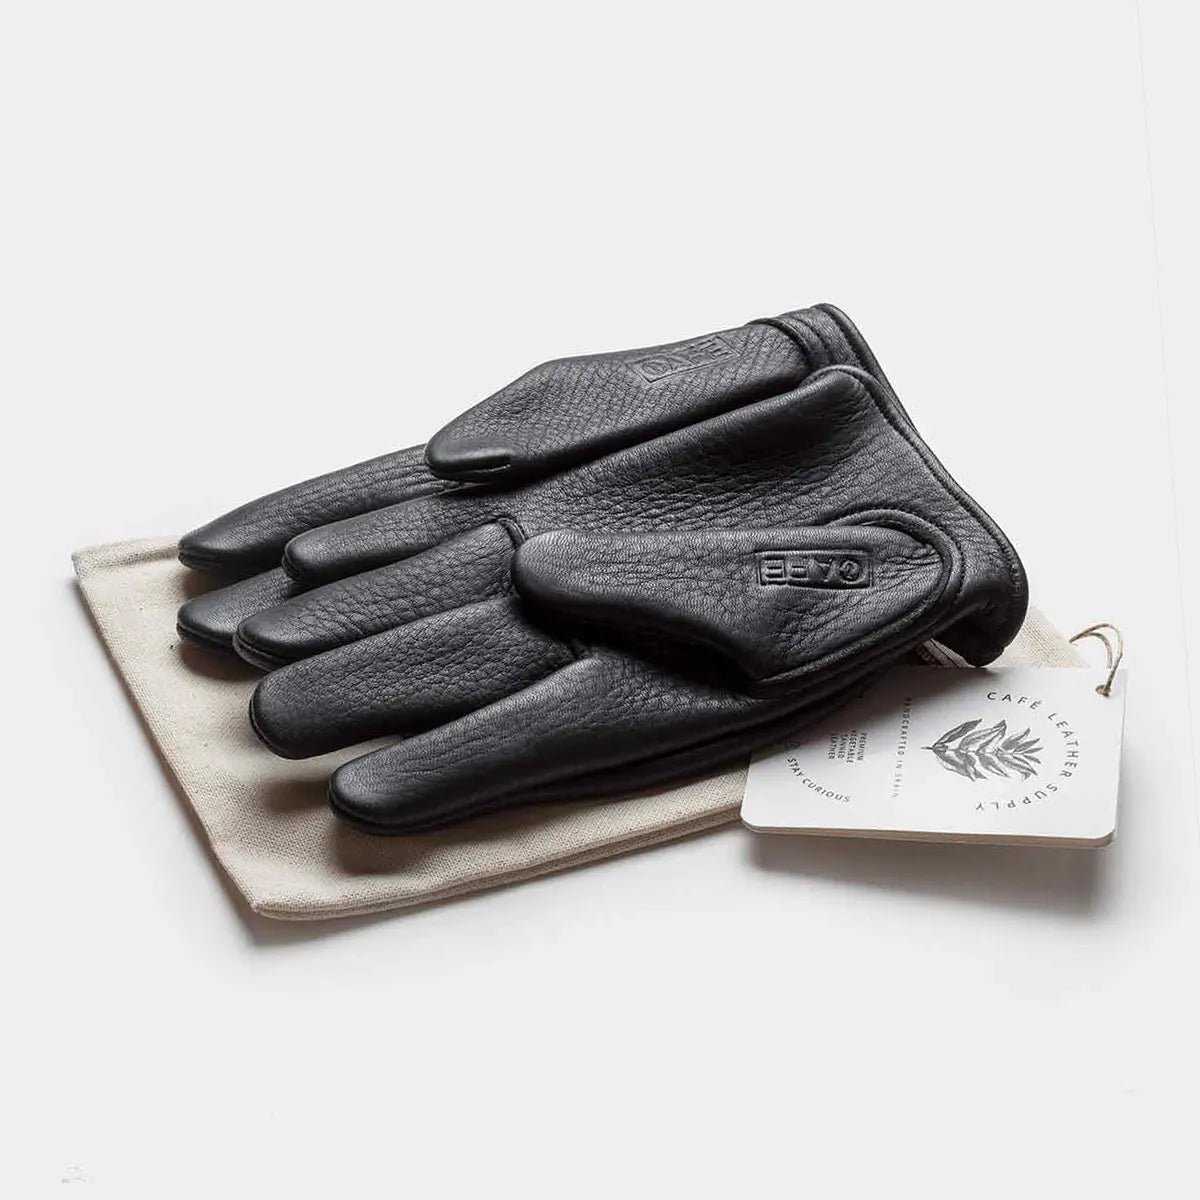 elkskin gloves black